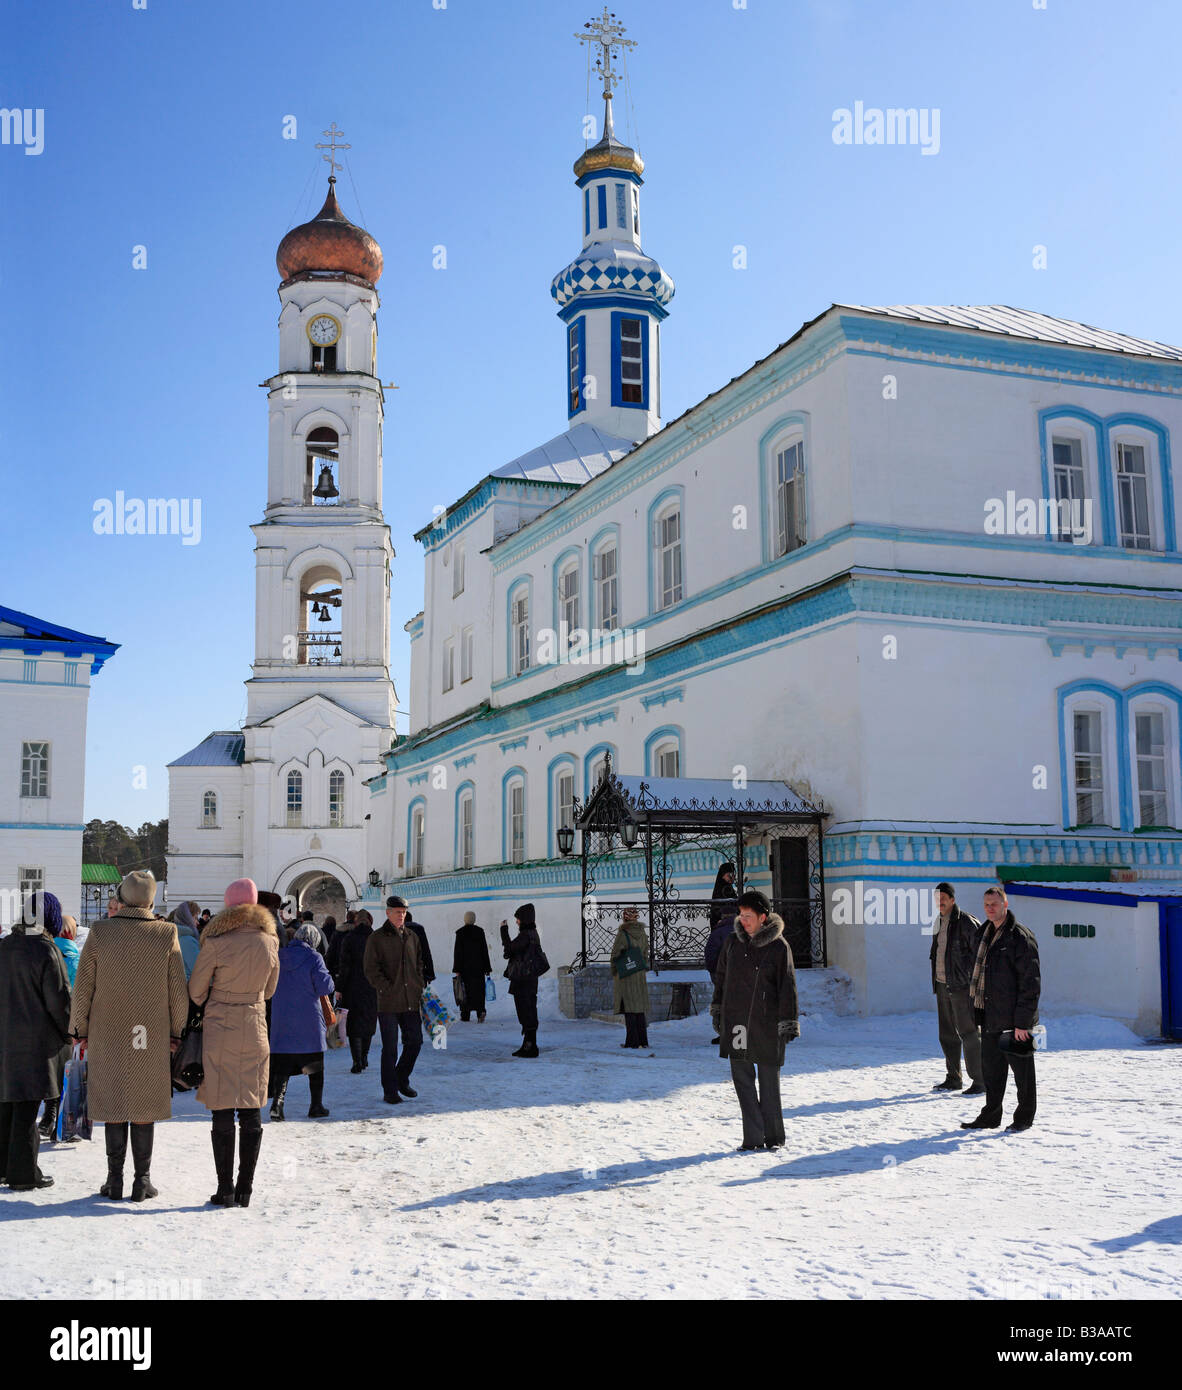 Raifa monastero ortodosso (19 cent.), nei pressi di Kazan, il Tatarstan, Russia Foto Stock